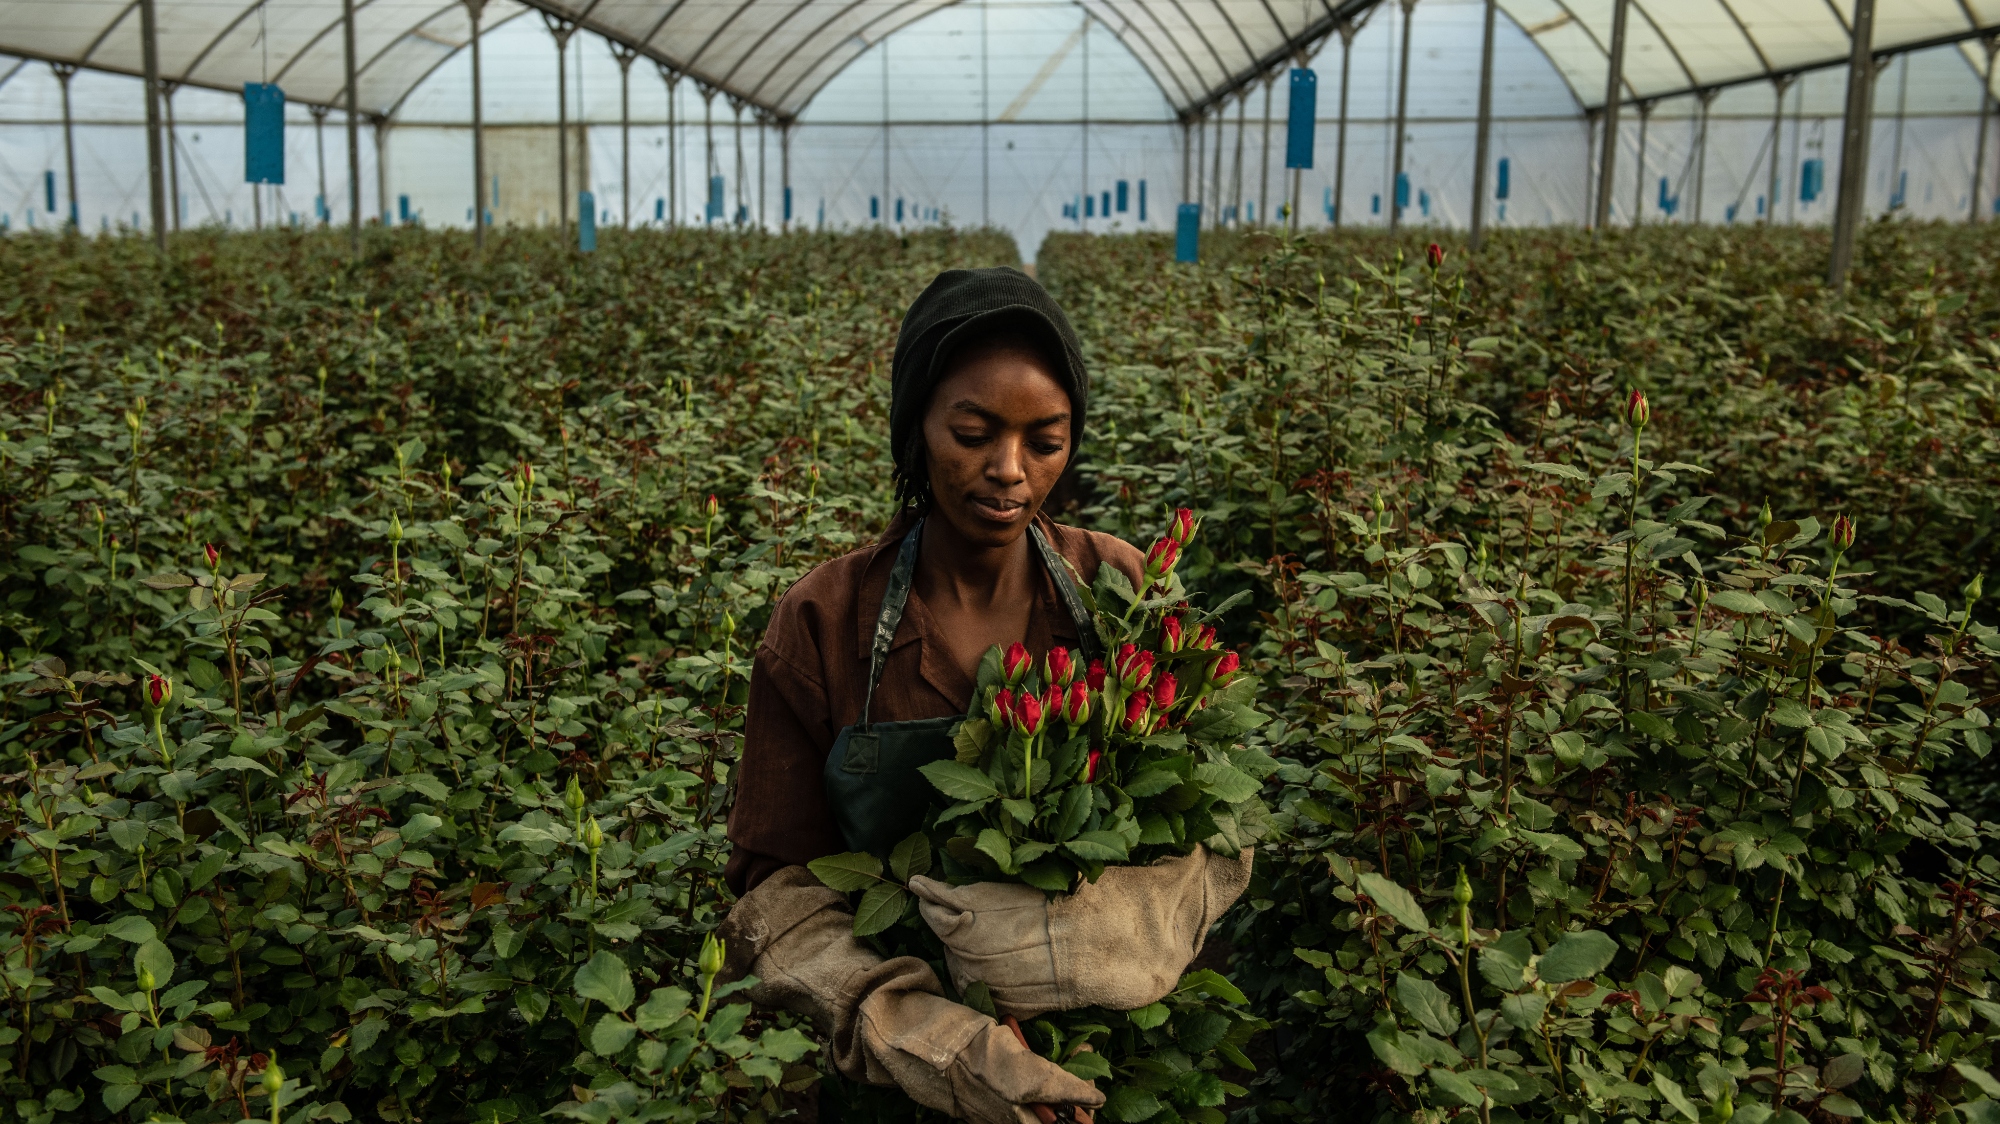 A woman picks flowers in a greenhouse in Kenya.